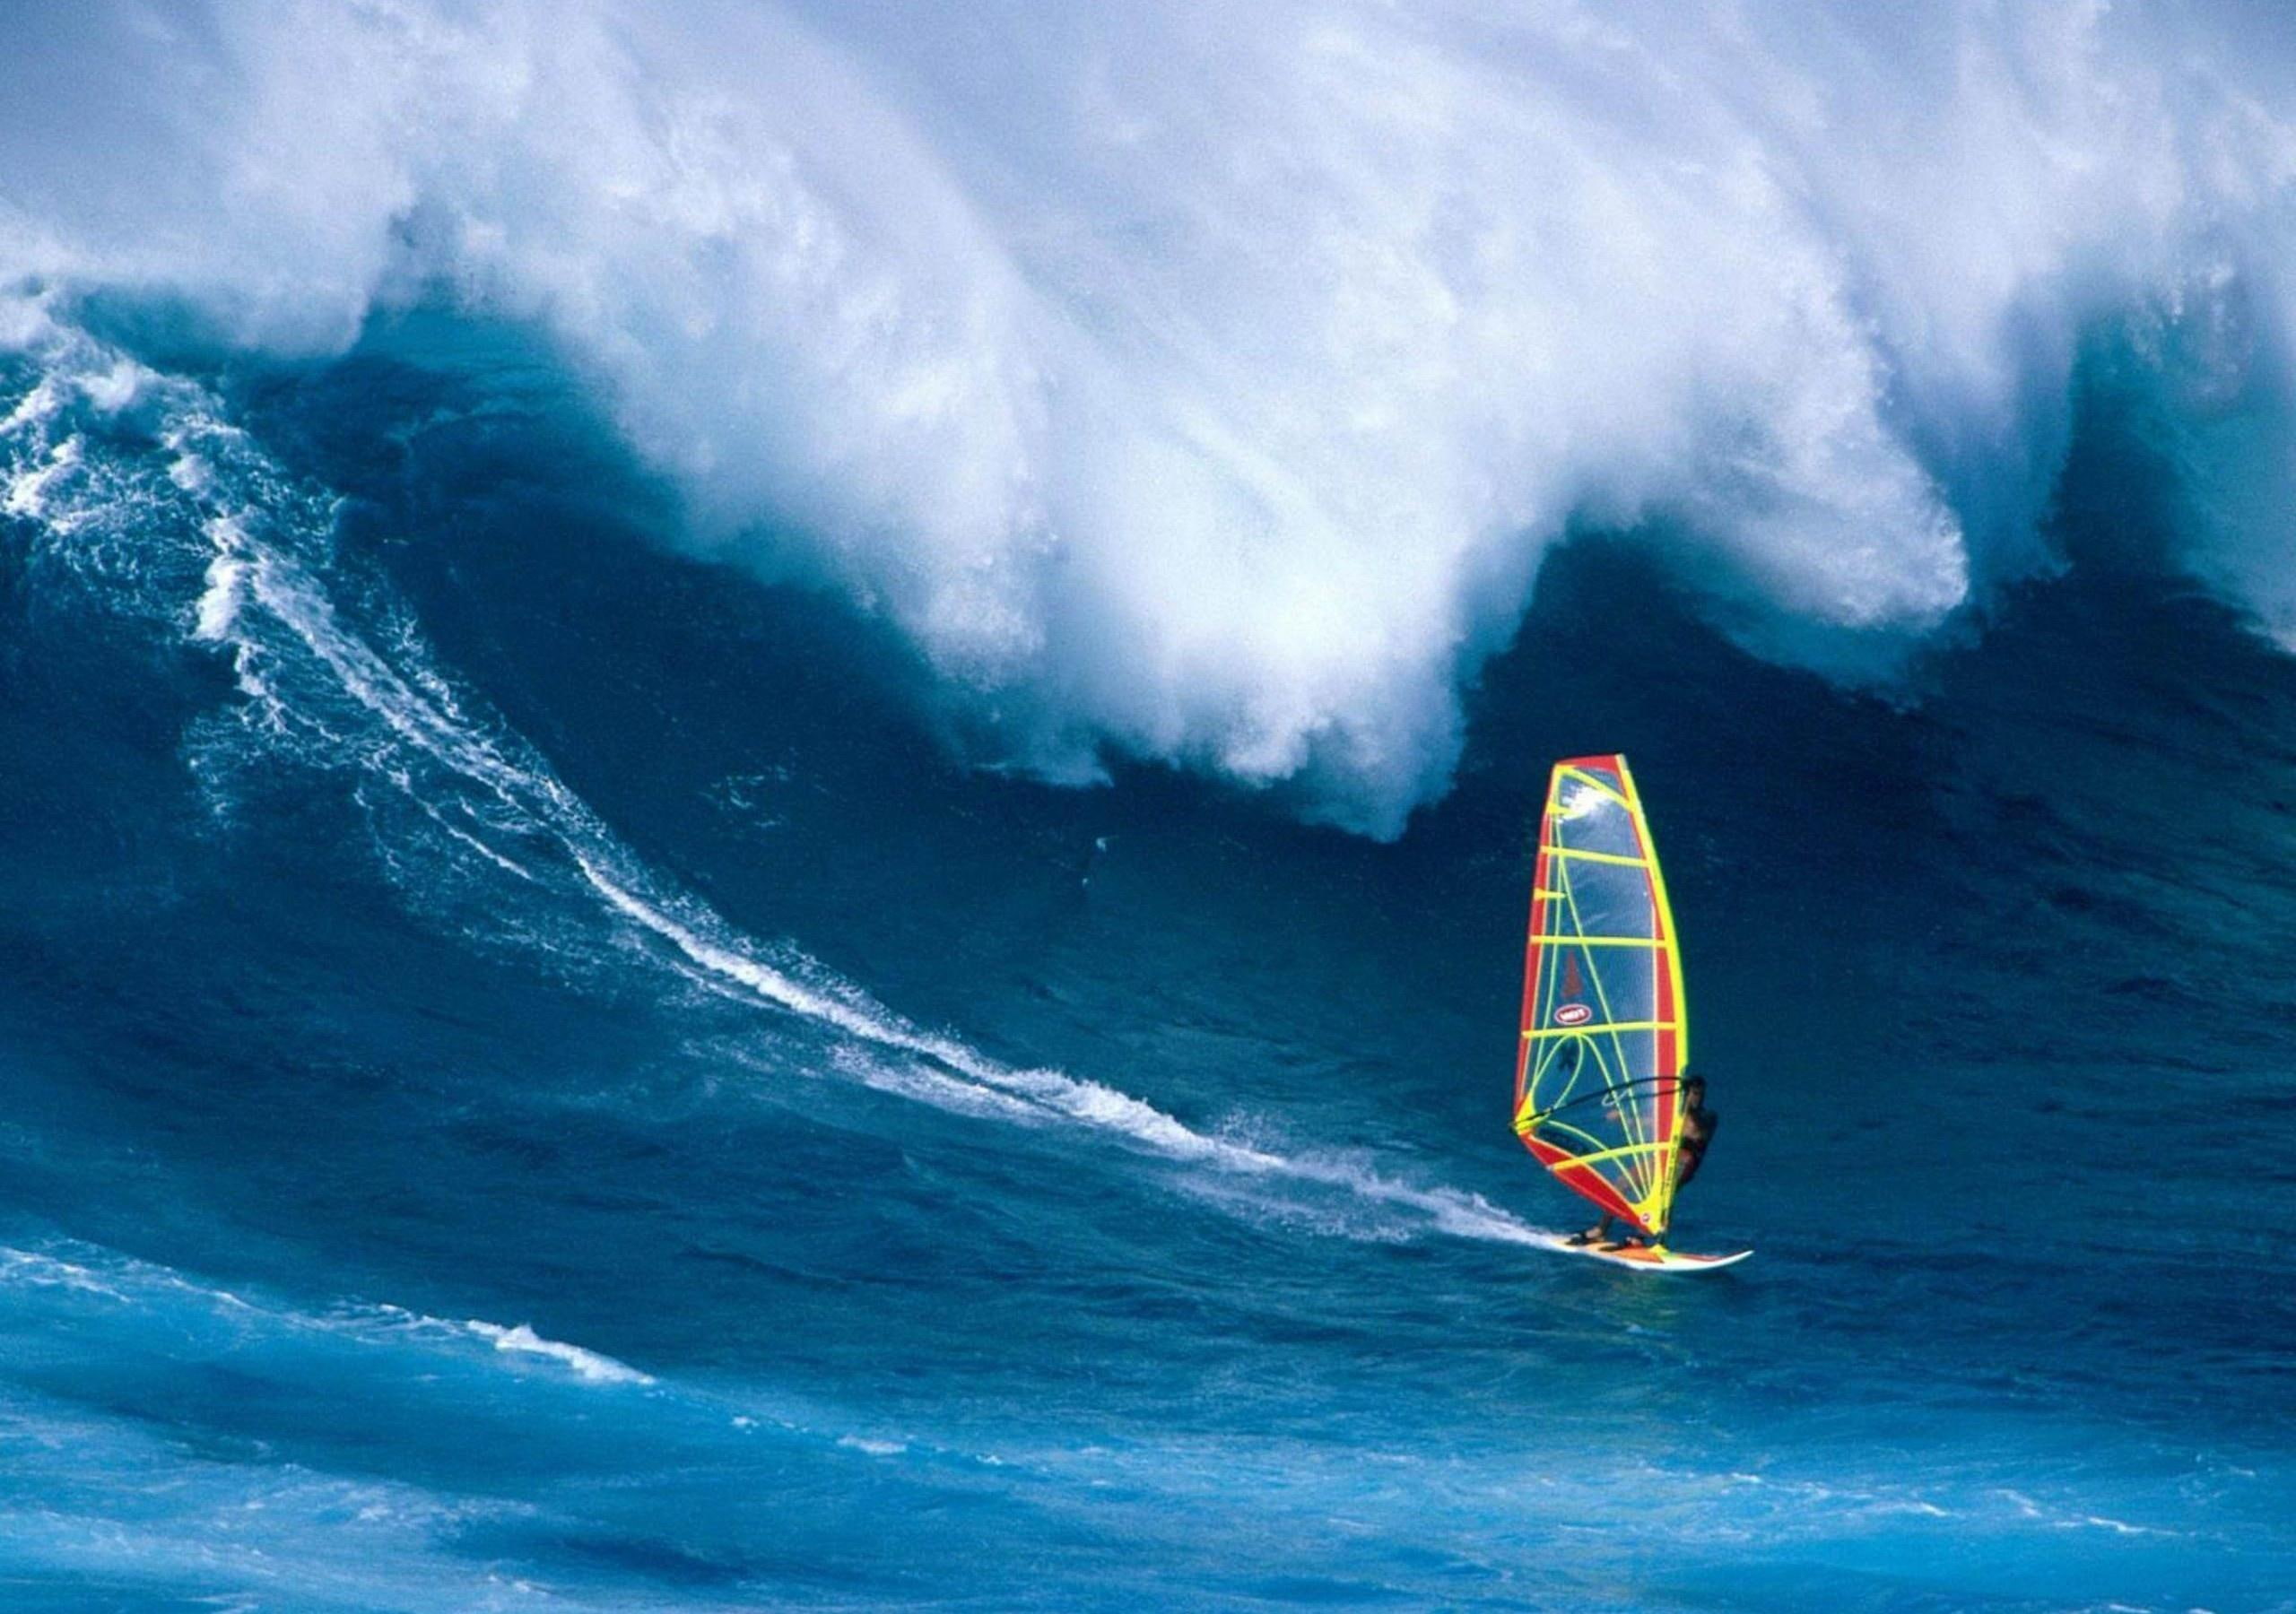 Hawaiian Surfing, water, wave, surfer, surfboard